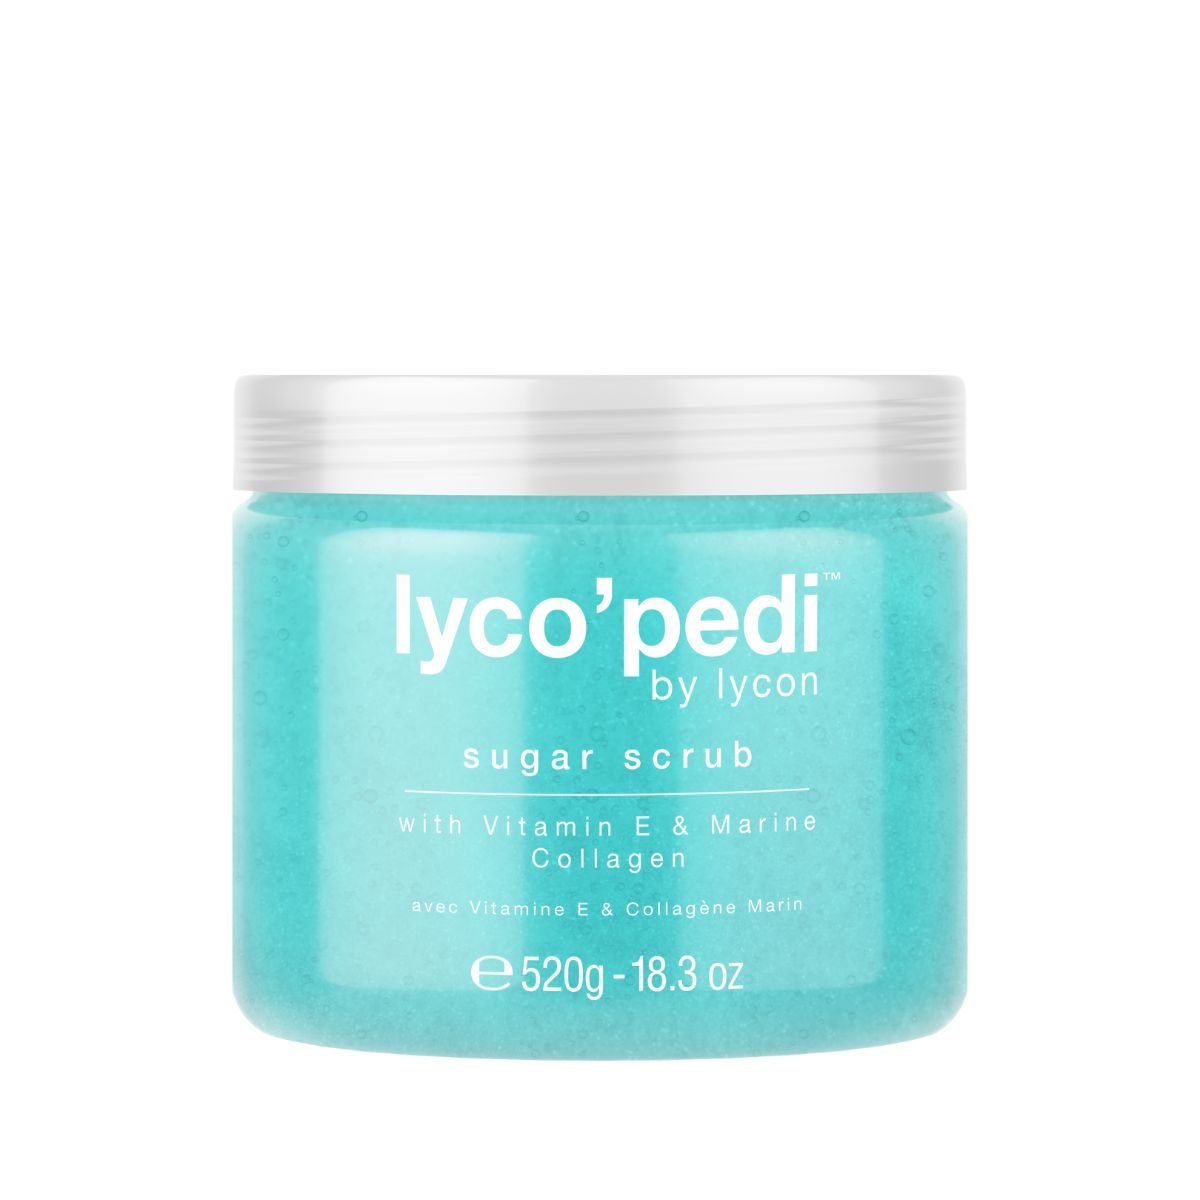 Lyco'Pedi Sugar Scrub - 520g